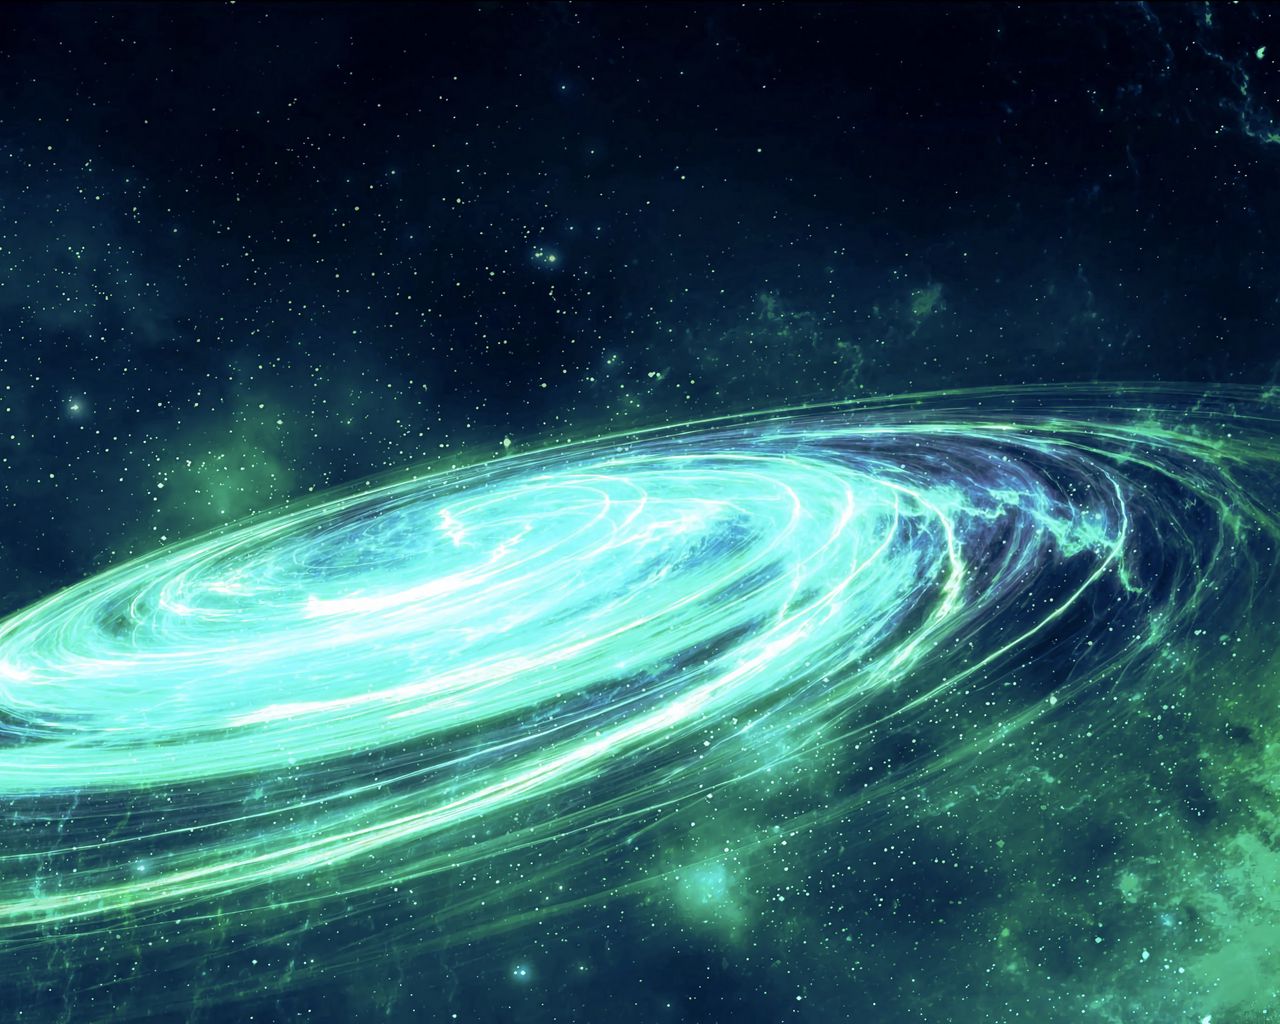 Thiên hà xoắn đề là một trong những vật thể đẹp nhất của vũ trụ. Hãy xem những bức ảnh liên quan để khám phá được sự độc đáo và hấp dẫn của thiên hà xoắn đề một cách hoàn hảo.